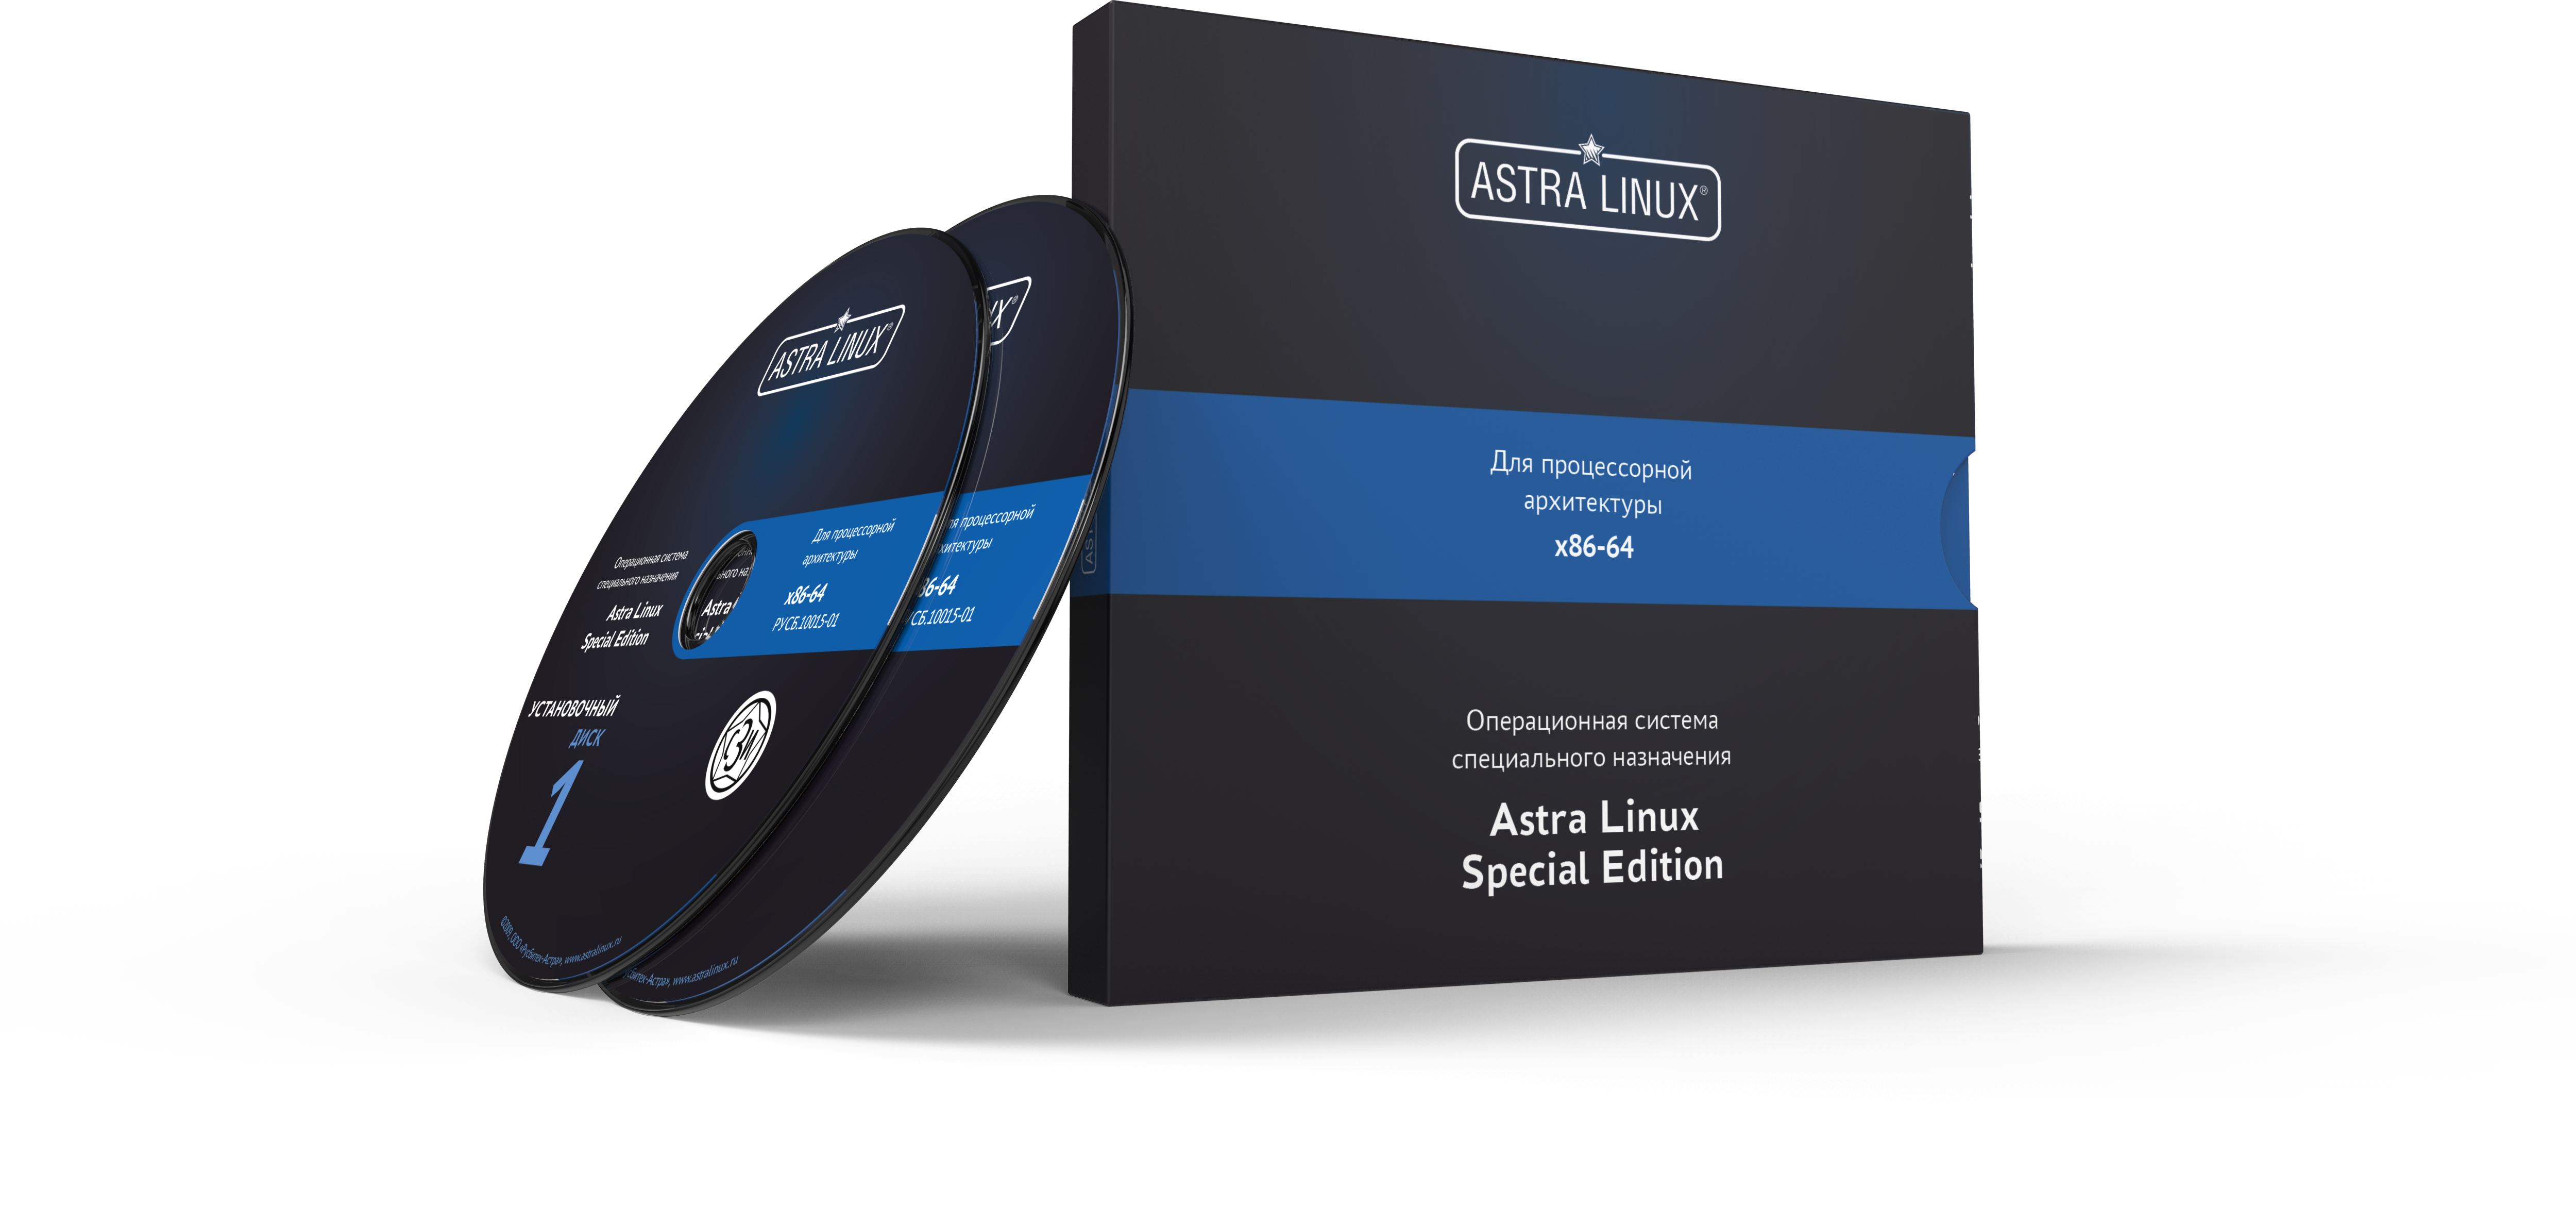 Astra Linux Special Edition 1.7 - Воронеж, для рабочей станции, "Усиленный", на 12 мес., ТП "Привилегированная" на 12 мес.